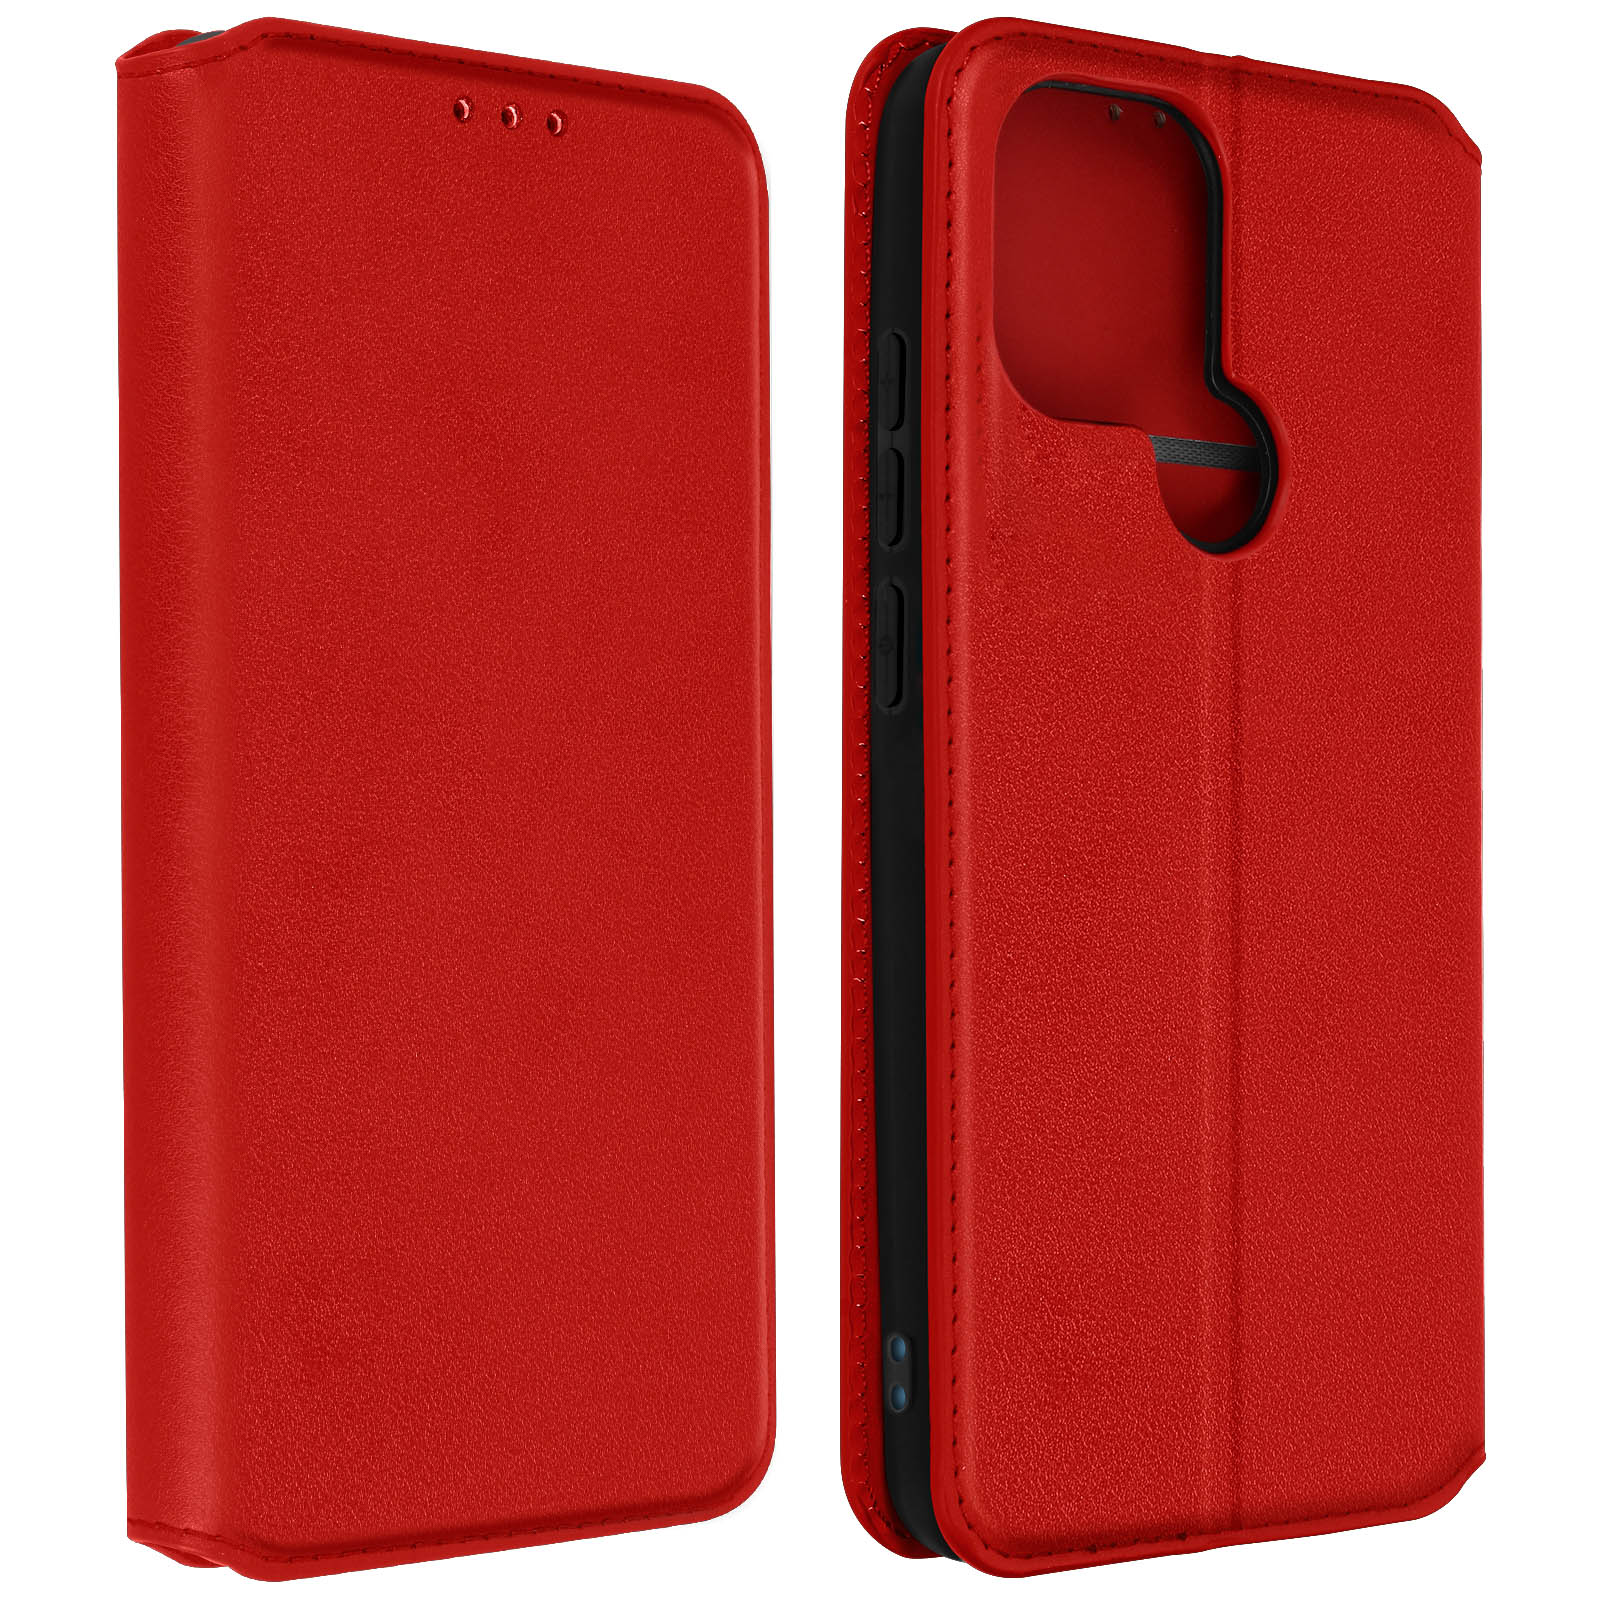 AVIZAR Classic Edition Series, Rot Xiaomi, Bookcover, A2, Redmi